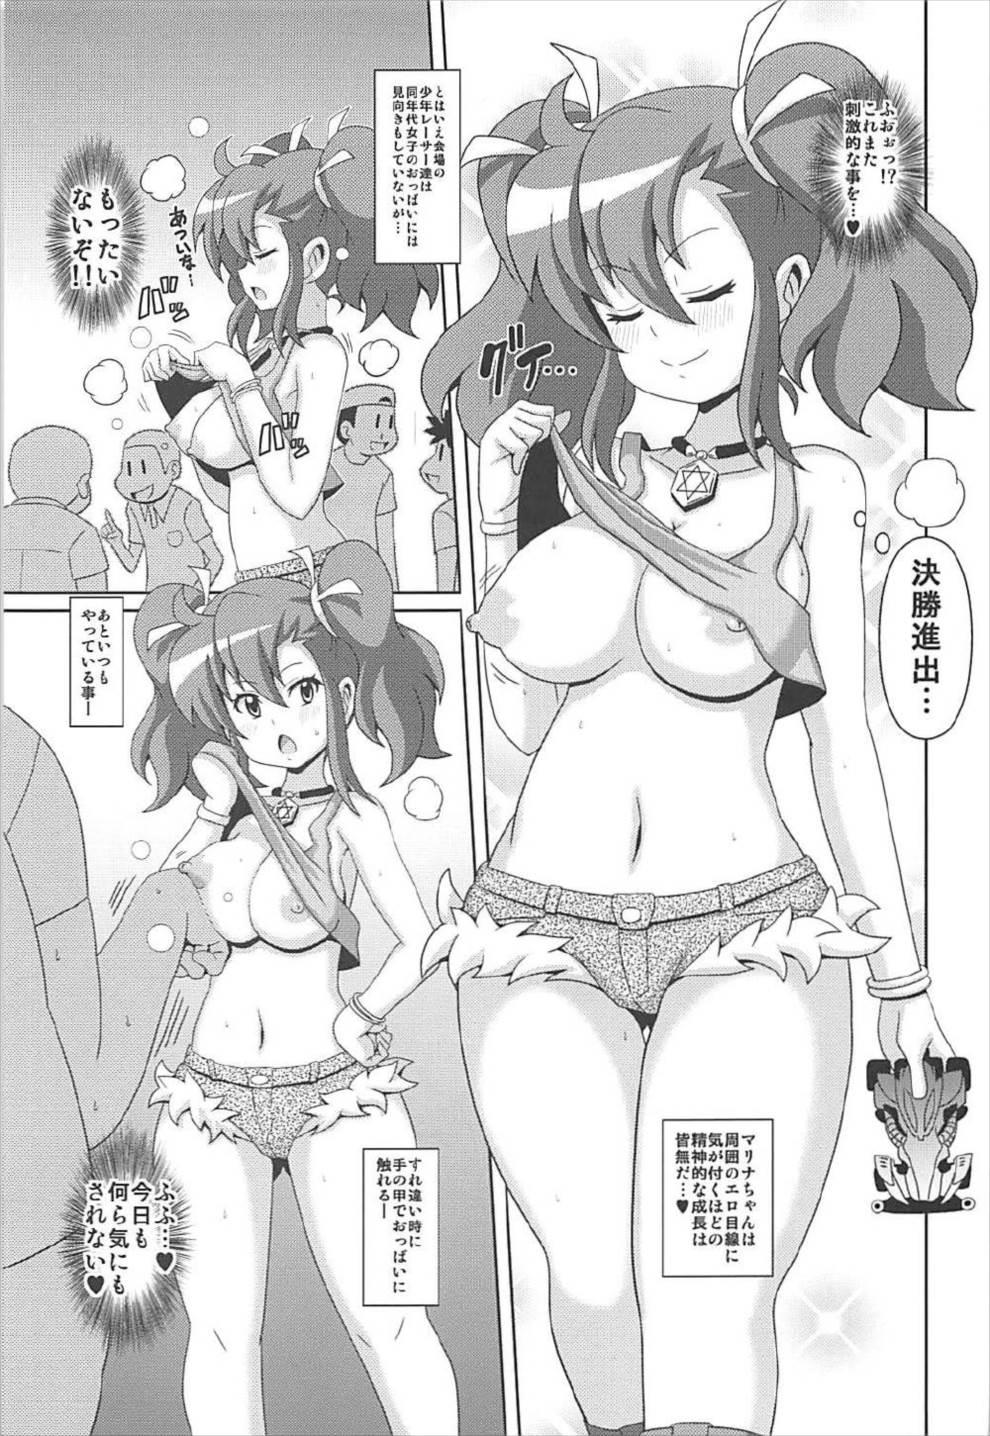 Hot Fucking "Ogami Marina Sukidarake" - Bakusou kyoudai lets and go Whipping - Page 6